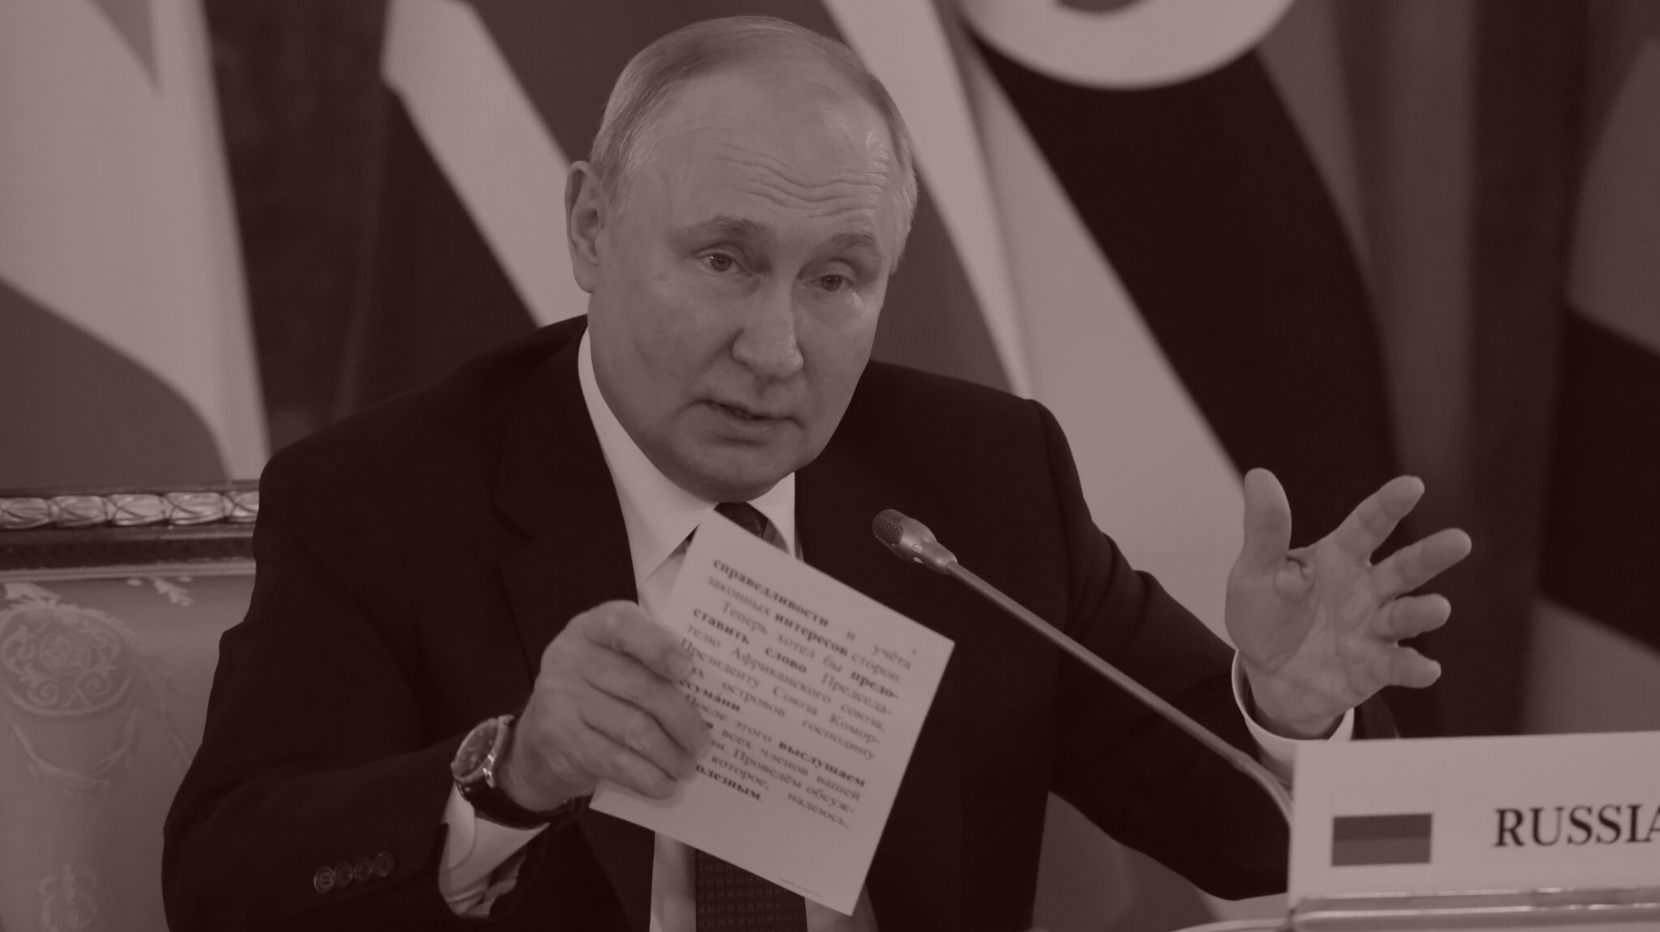 Putin vs. Prigozhin: The Post-Coup Report